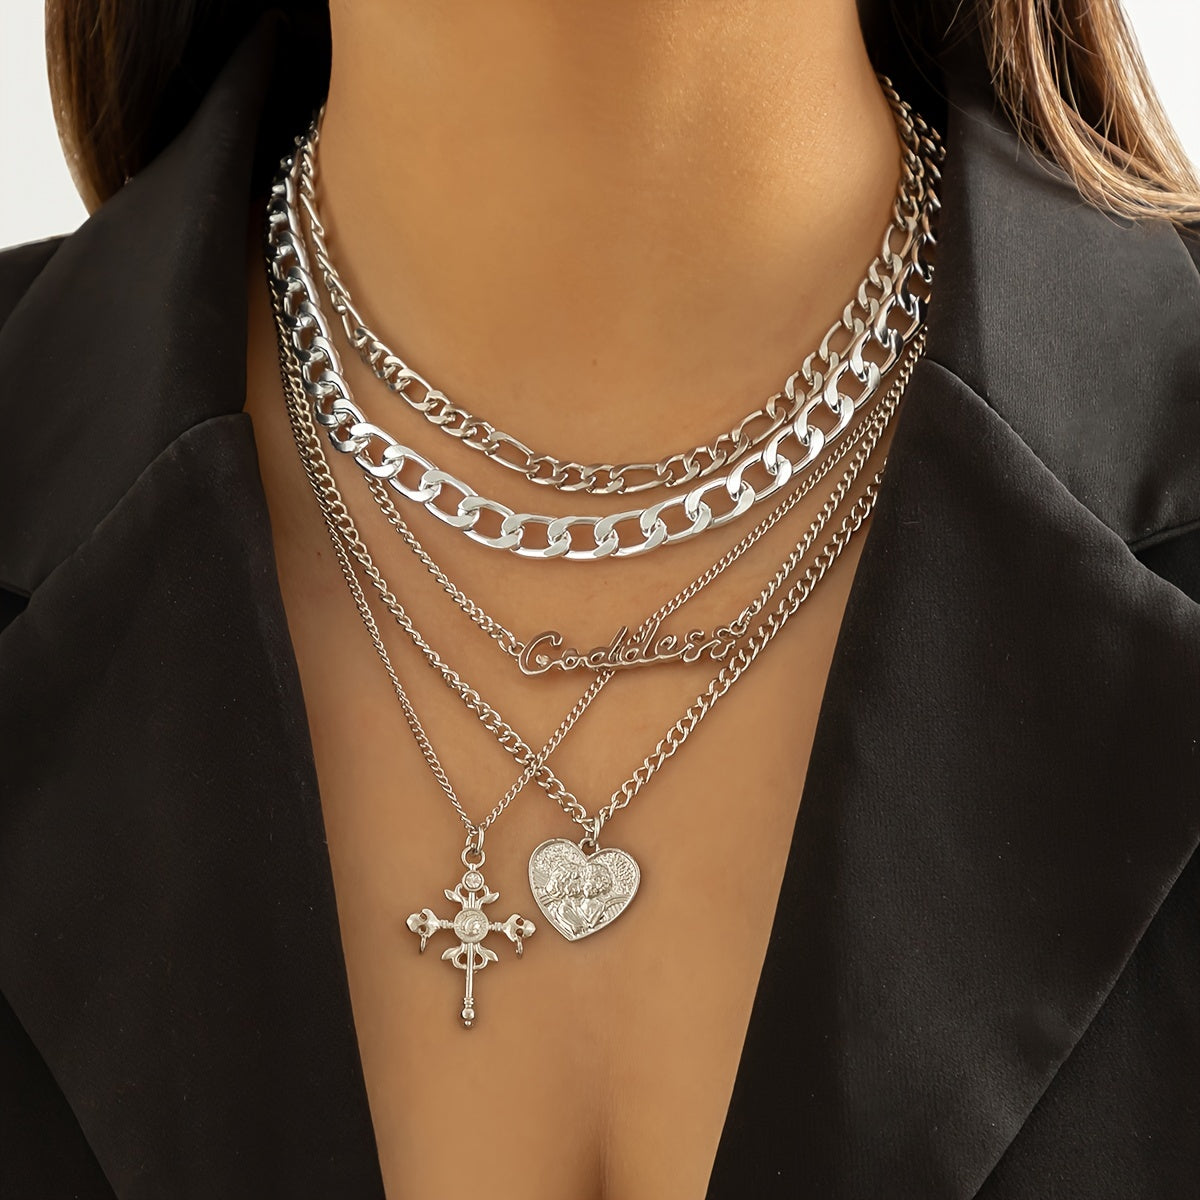 5 Pcs Vintage Stackable Necklace Heart & Cross Shape Pendant Adjustable Necklace Hip Hop Jewelry Set